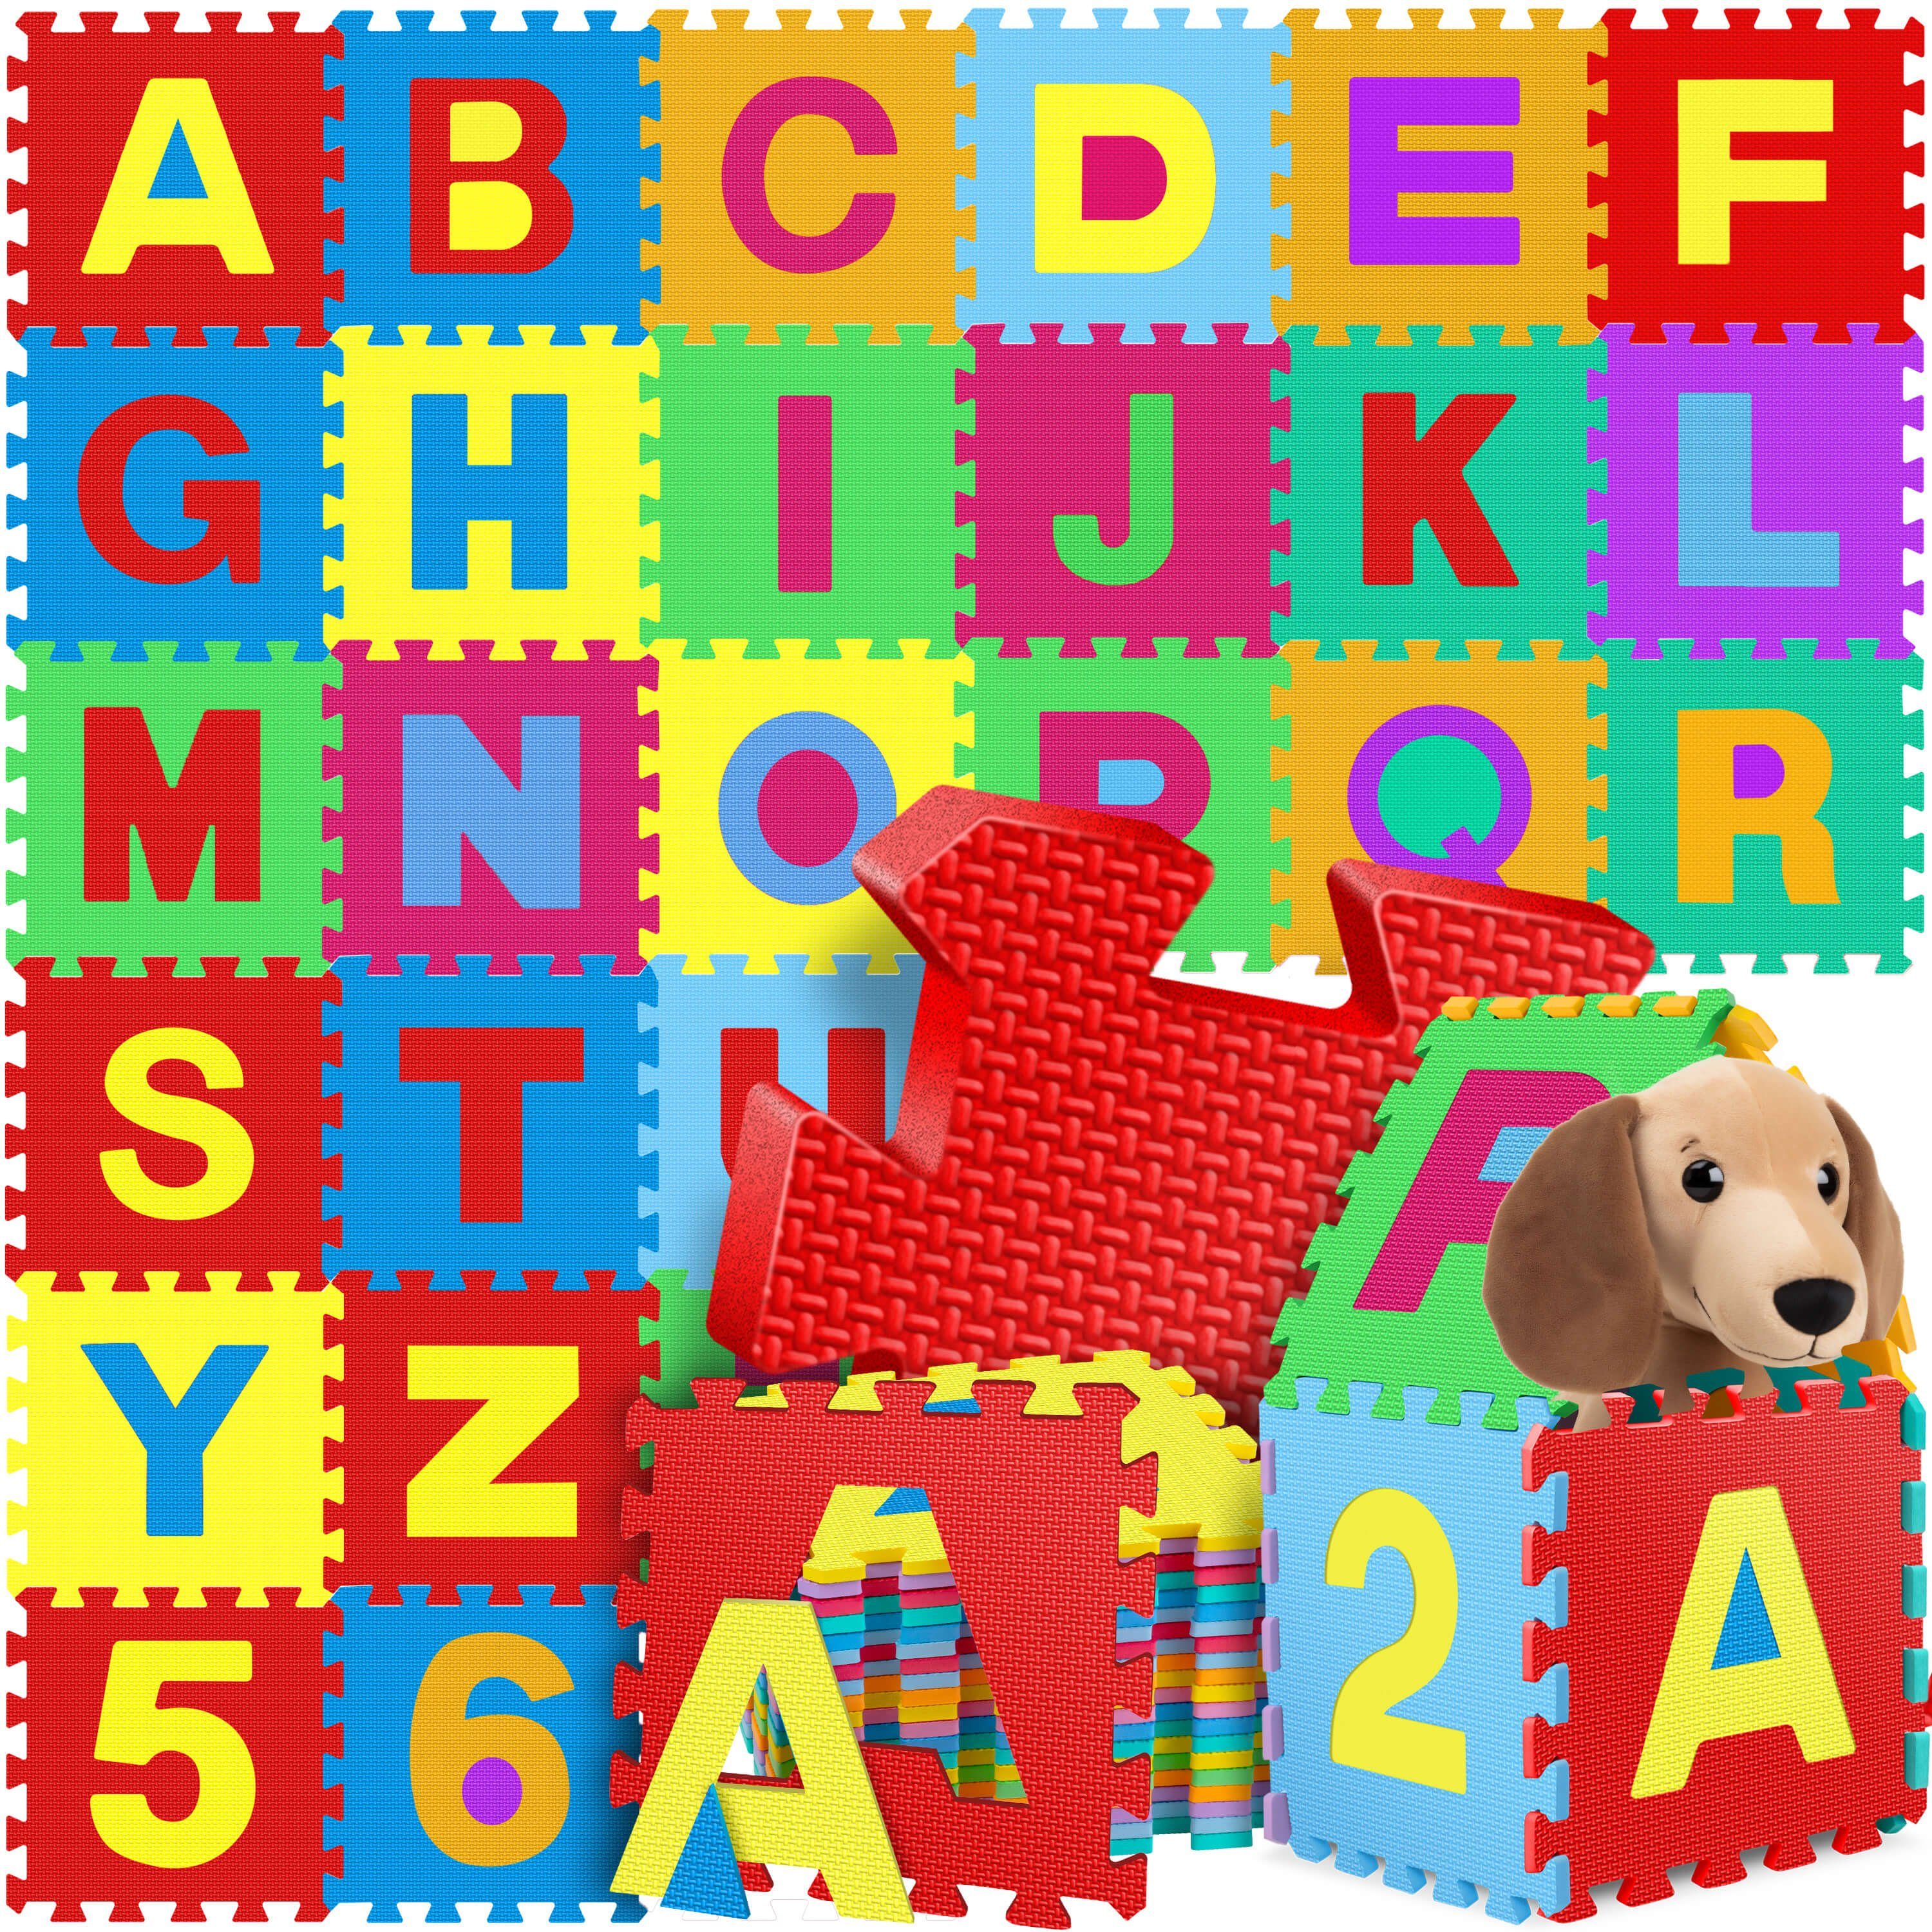 KIDIZ Steckpuzzle, 86 Puzzleteile, 86 teilige Puzzlematte Kinder Spielteppich Spielmatte bunt